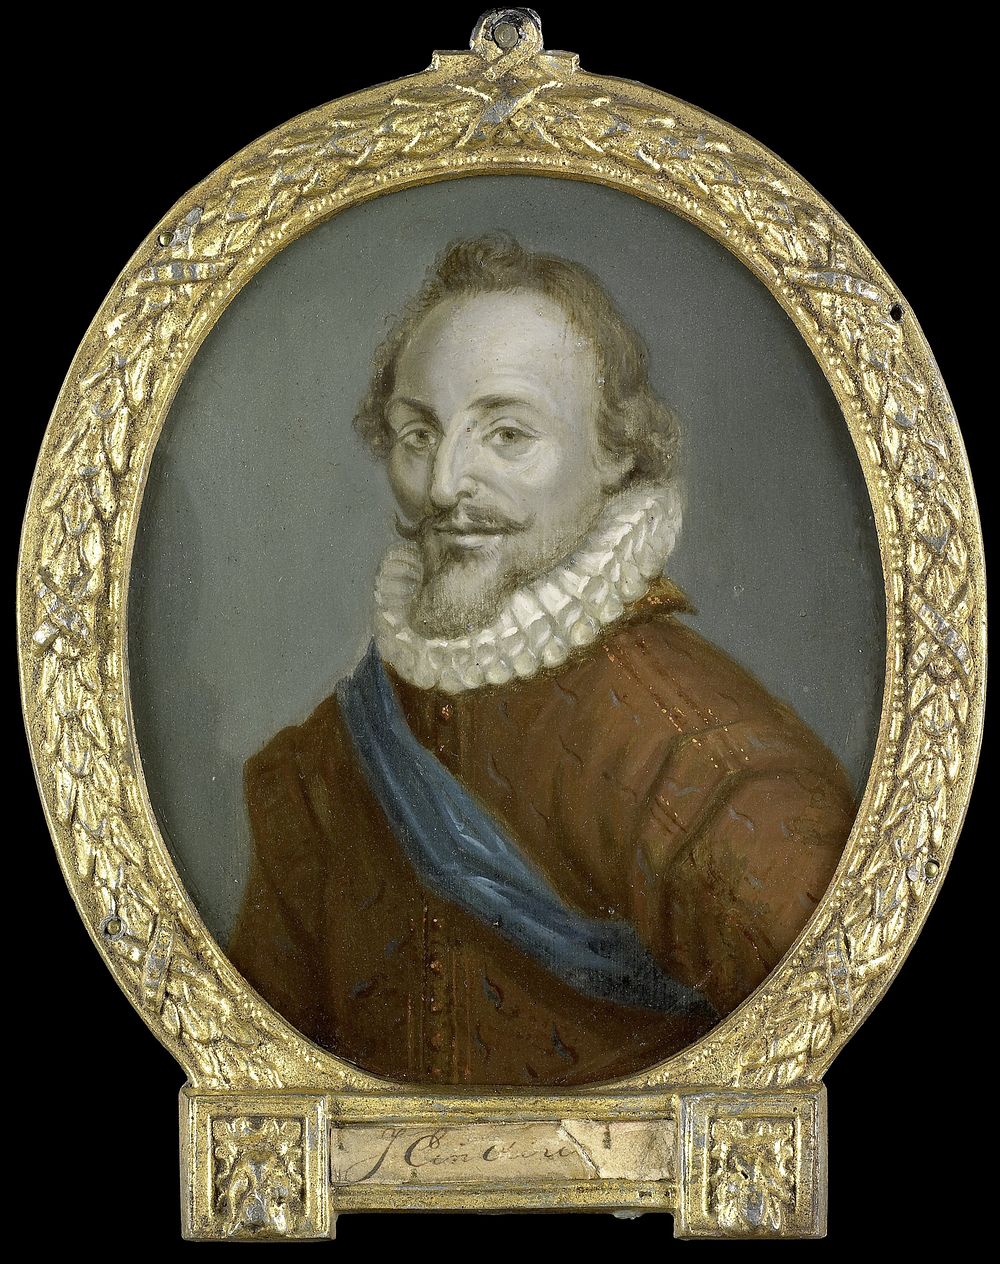 Portrait of Jacob van den Eynde, Governor of Woerden (1700 - 1732) by Arnoud van Halen